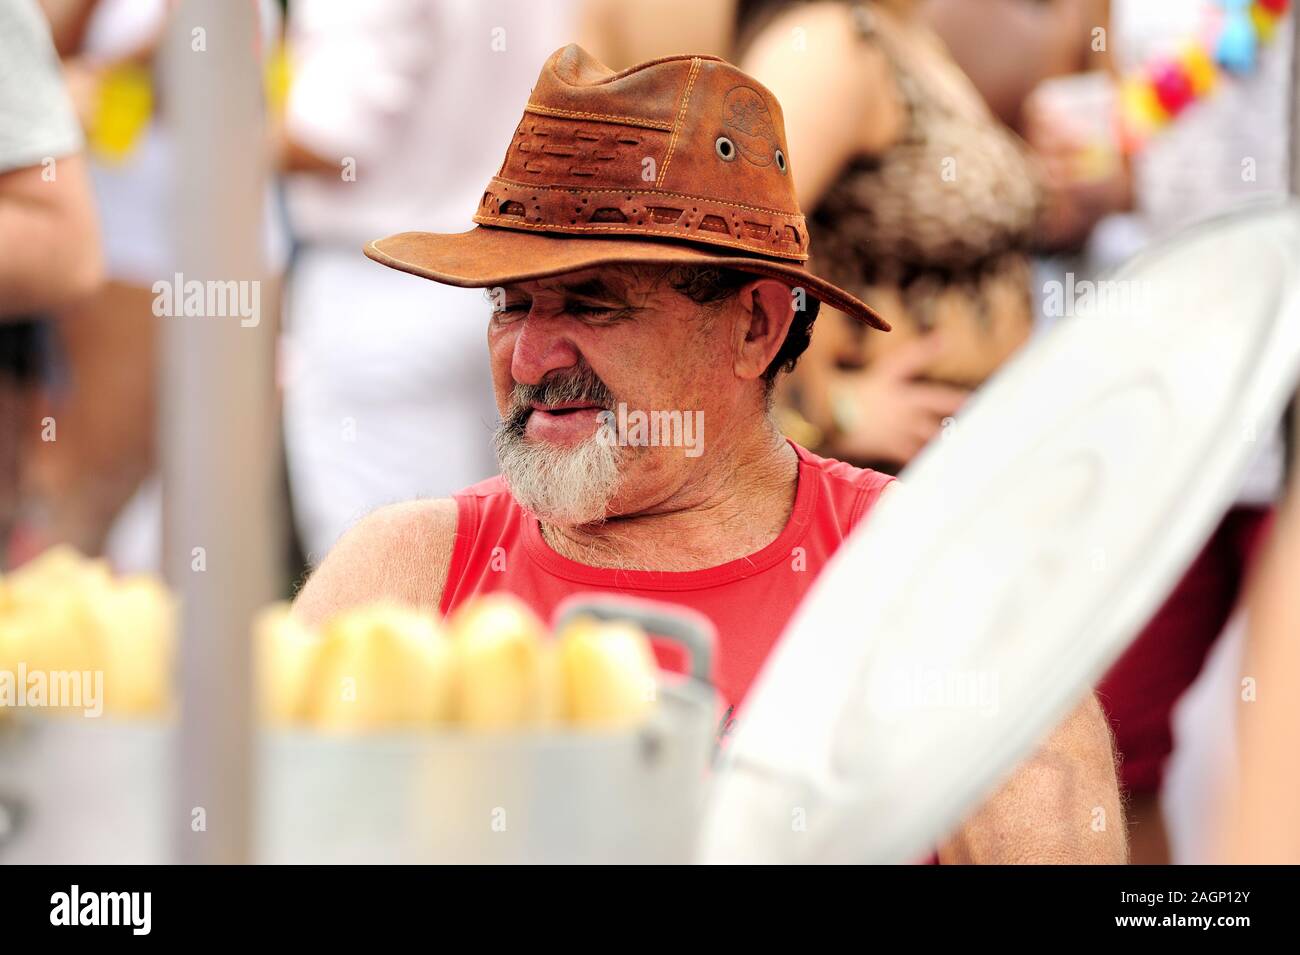 Sud America, Brasile - 3 marzo 2019: Uomo che vende mais bollito durante una sfilata di strada di carnevale che si tiene nel centro di Rio de Janeiro. Foto Stock